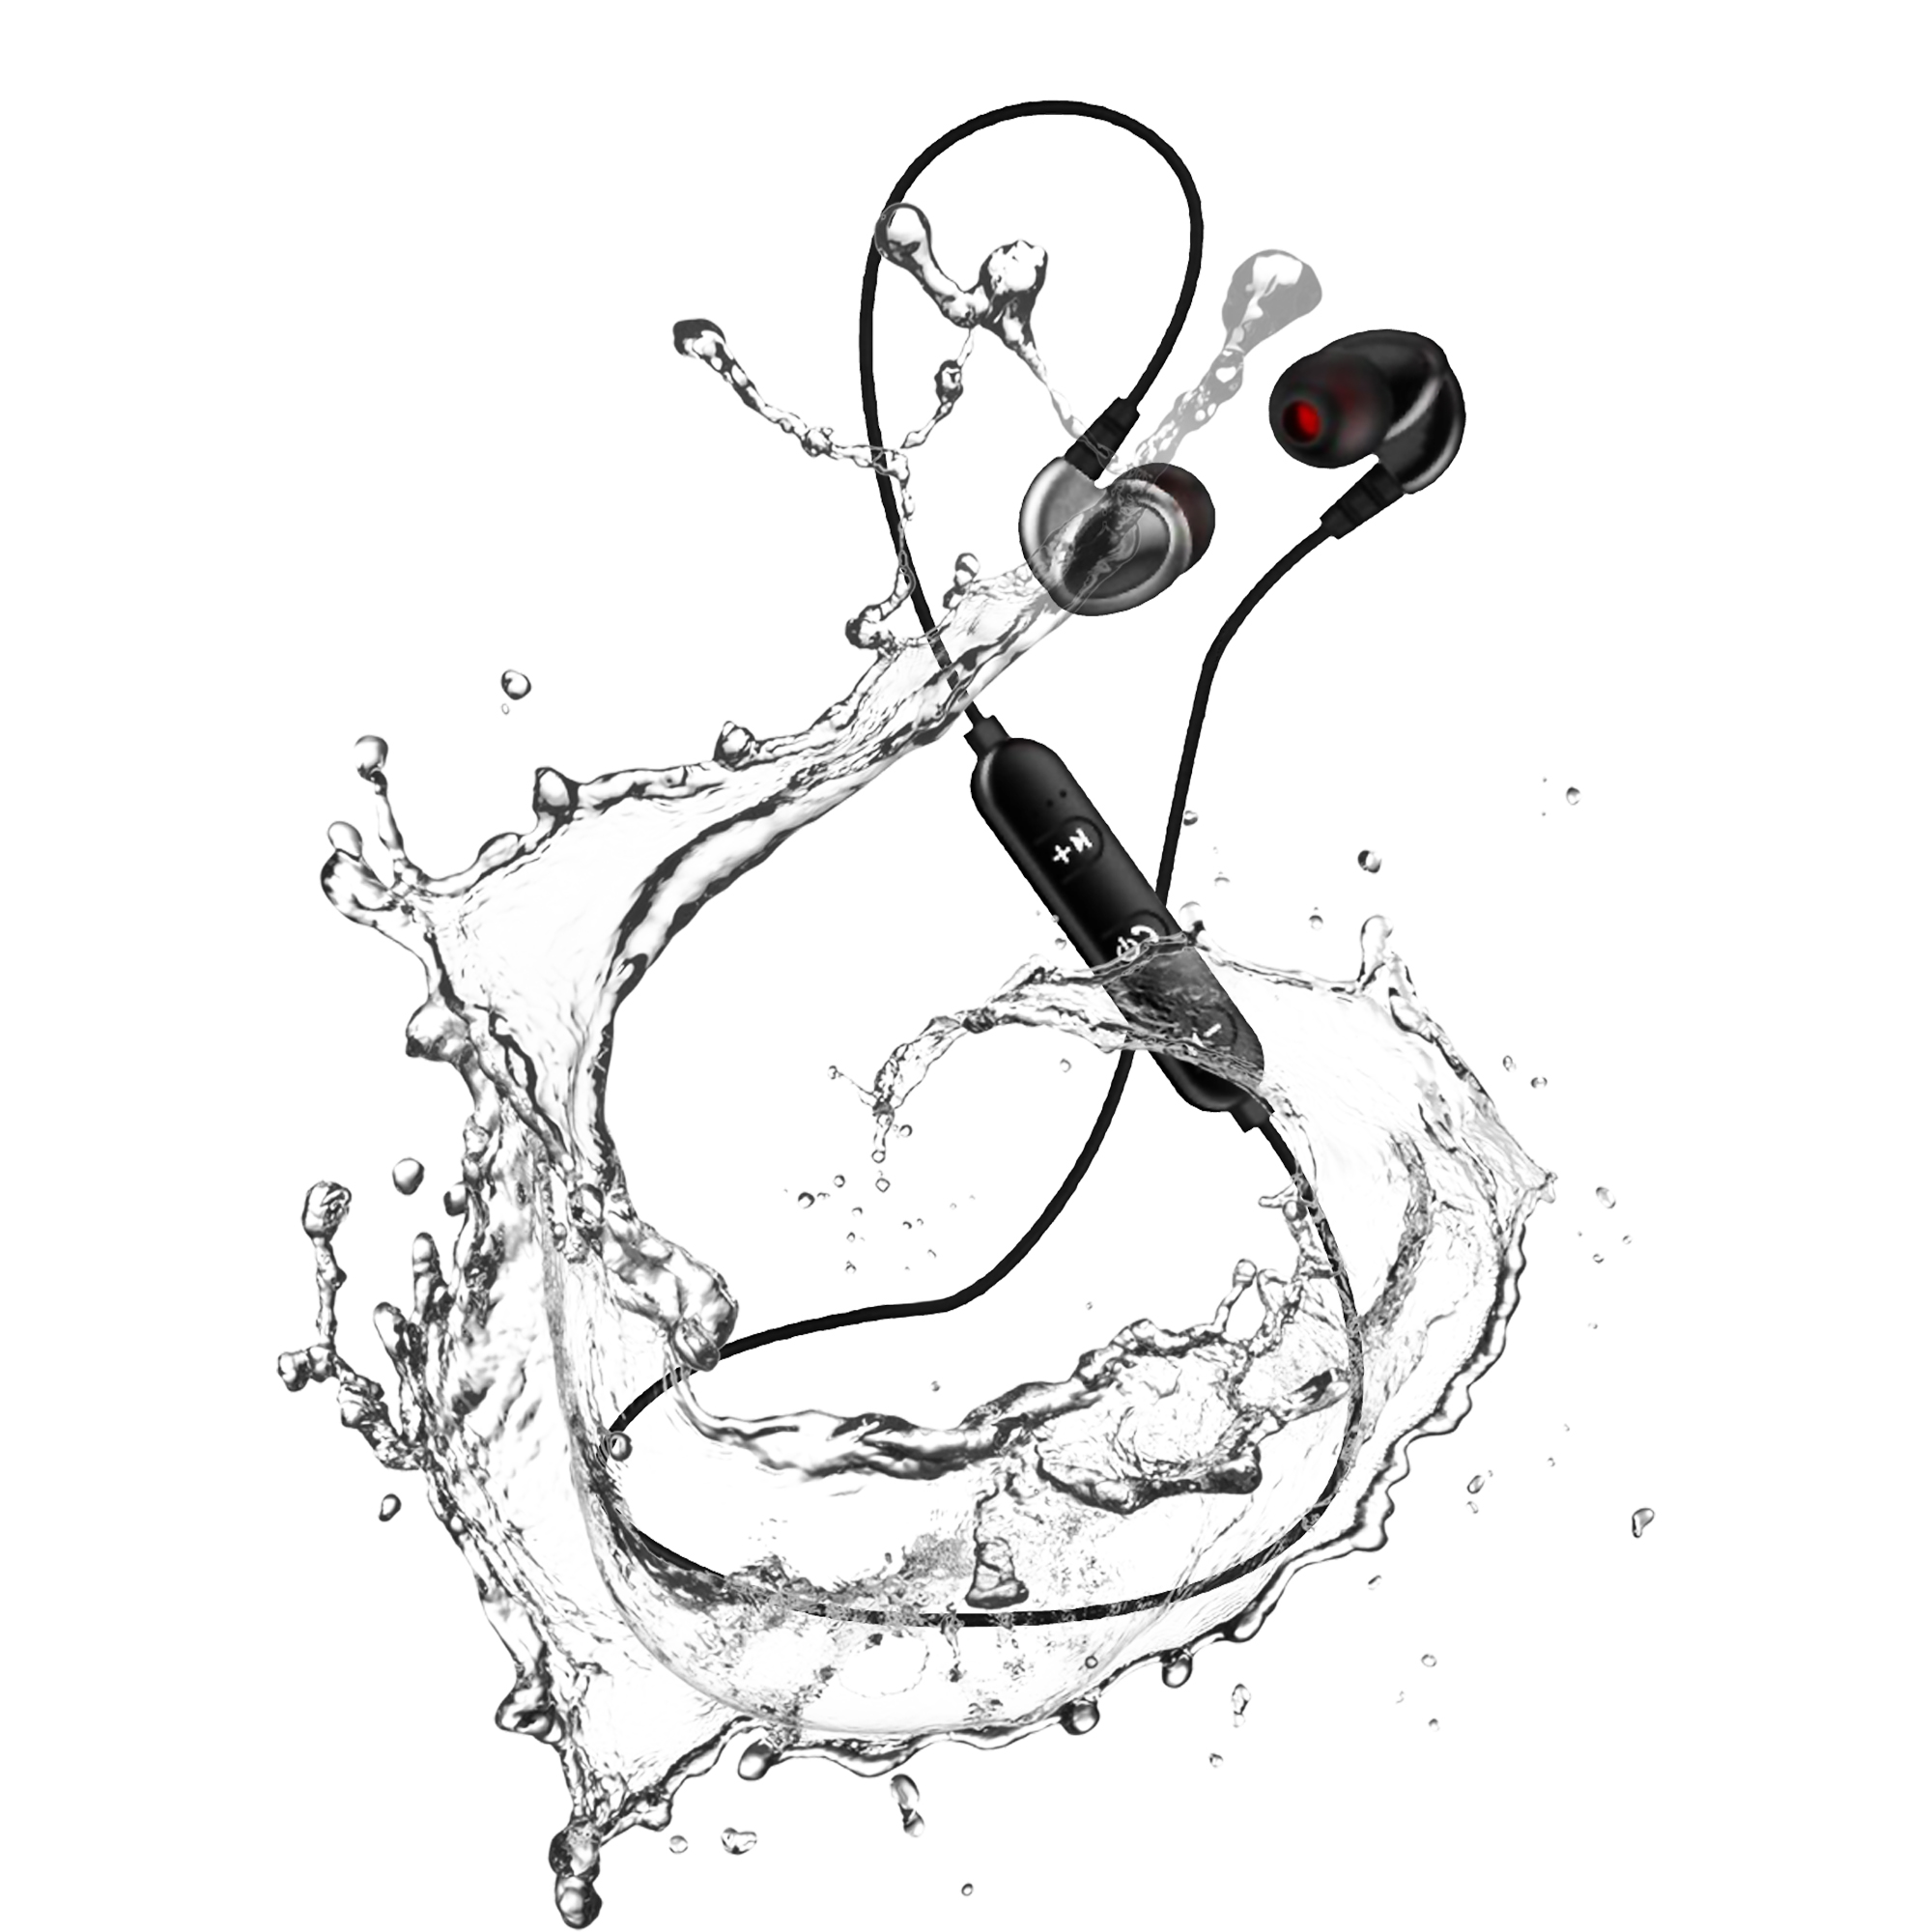 Bluetooth In-ear Kopfhörer Bluetooth LEICKE Smart In-Ear-Kopfhörer, Bluetooth schwarz